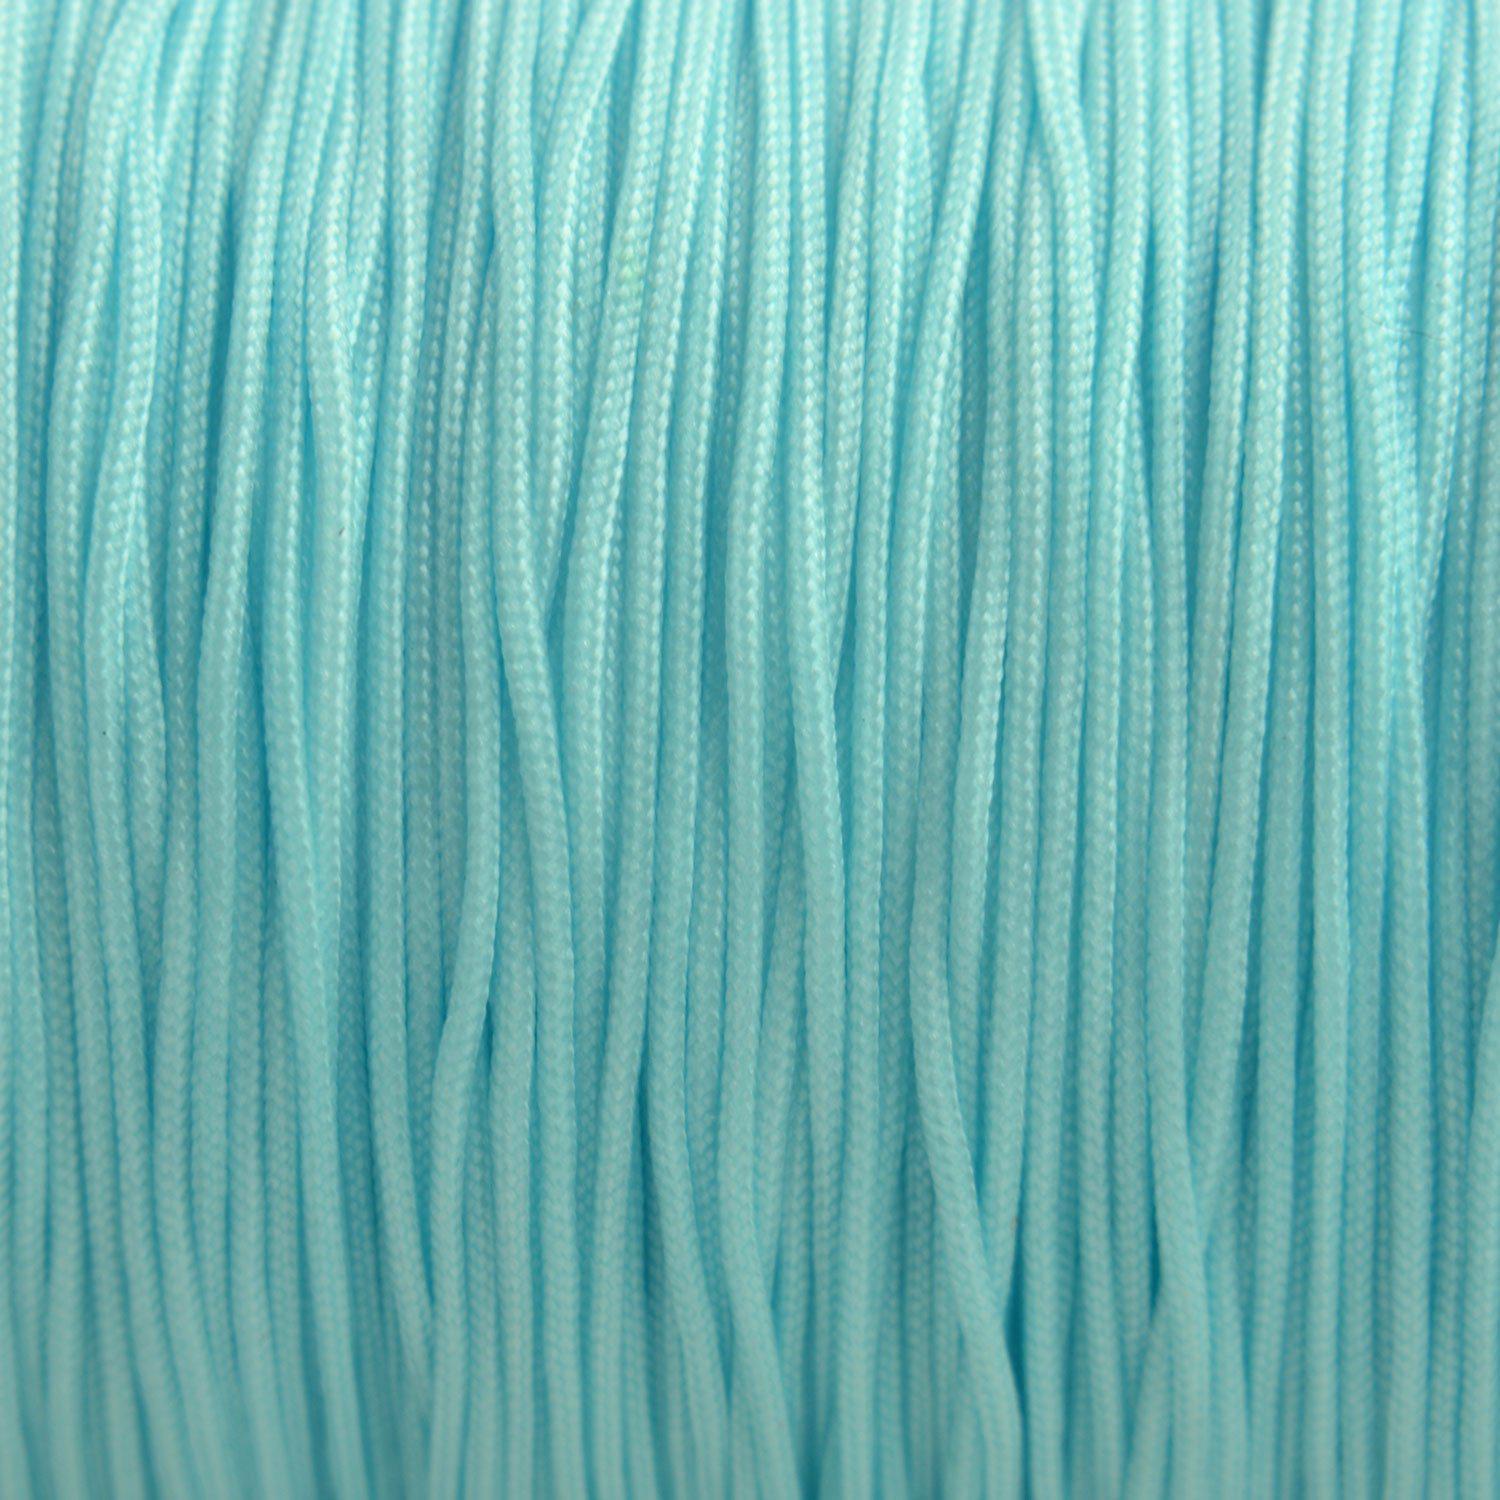 Nylon rattail koord licht aqua 0.5mm - 6 meter-Kraaltjes van Renate